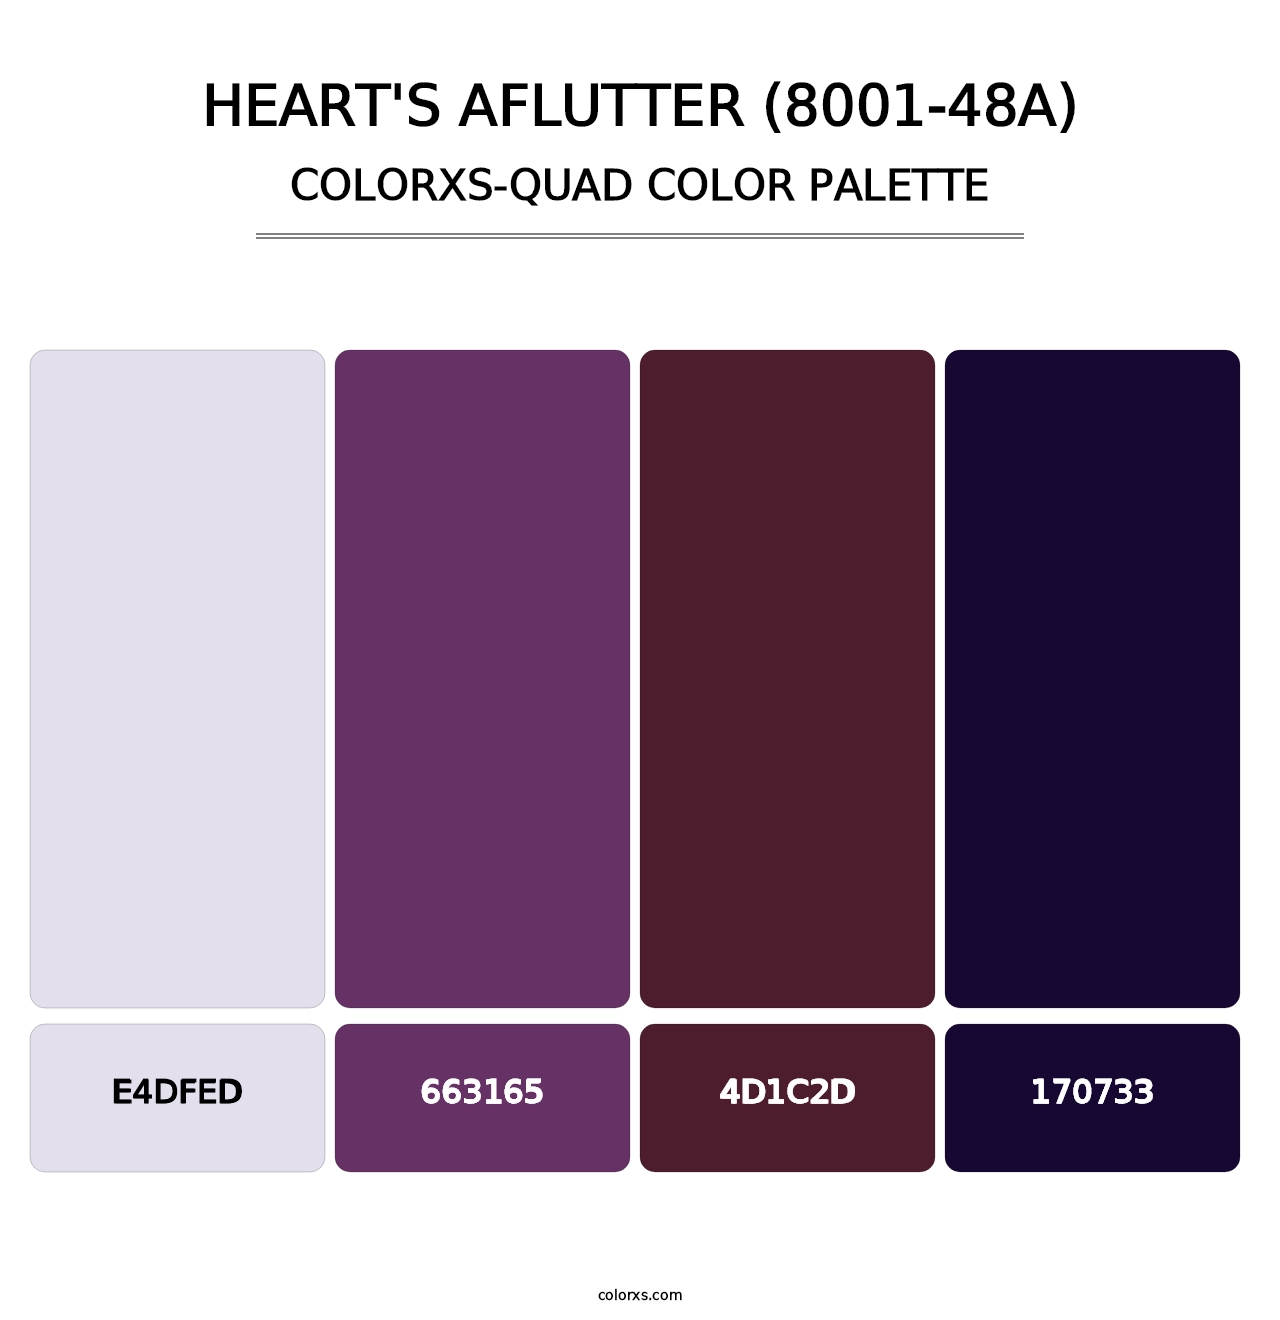 Heart's Aflutter (8001-48A) - Colorxs Quad Palette